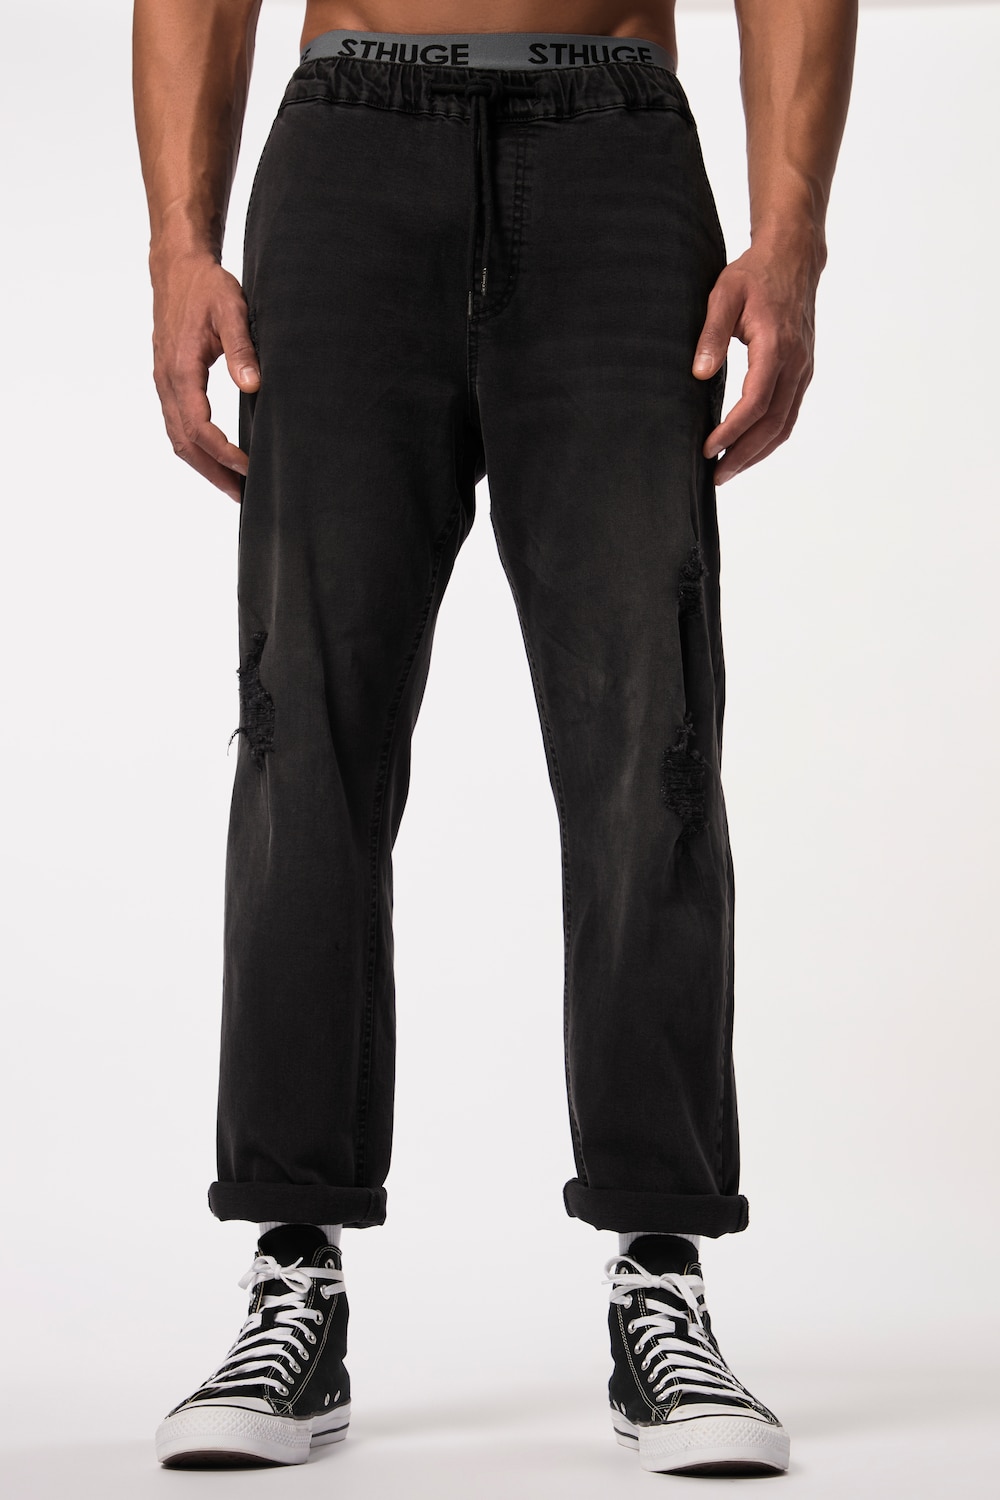 Grote Maten STHUGE jeans FLEXLASTIC®male, zwart, Maat: 8XL, Katoen, STHUGE